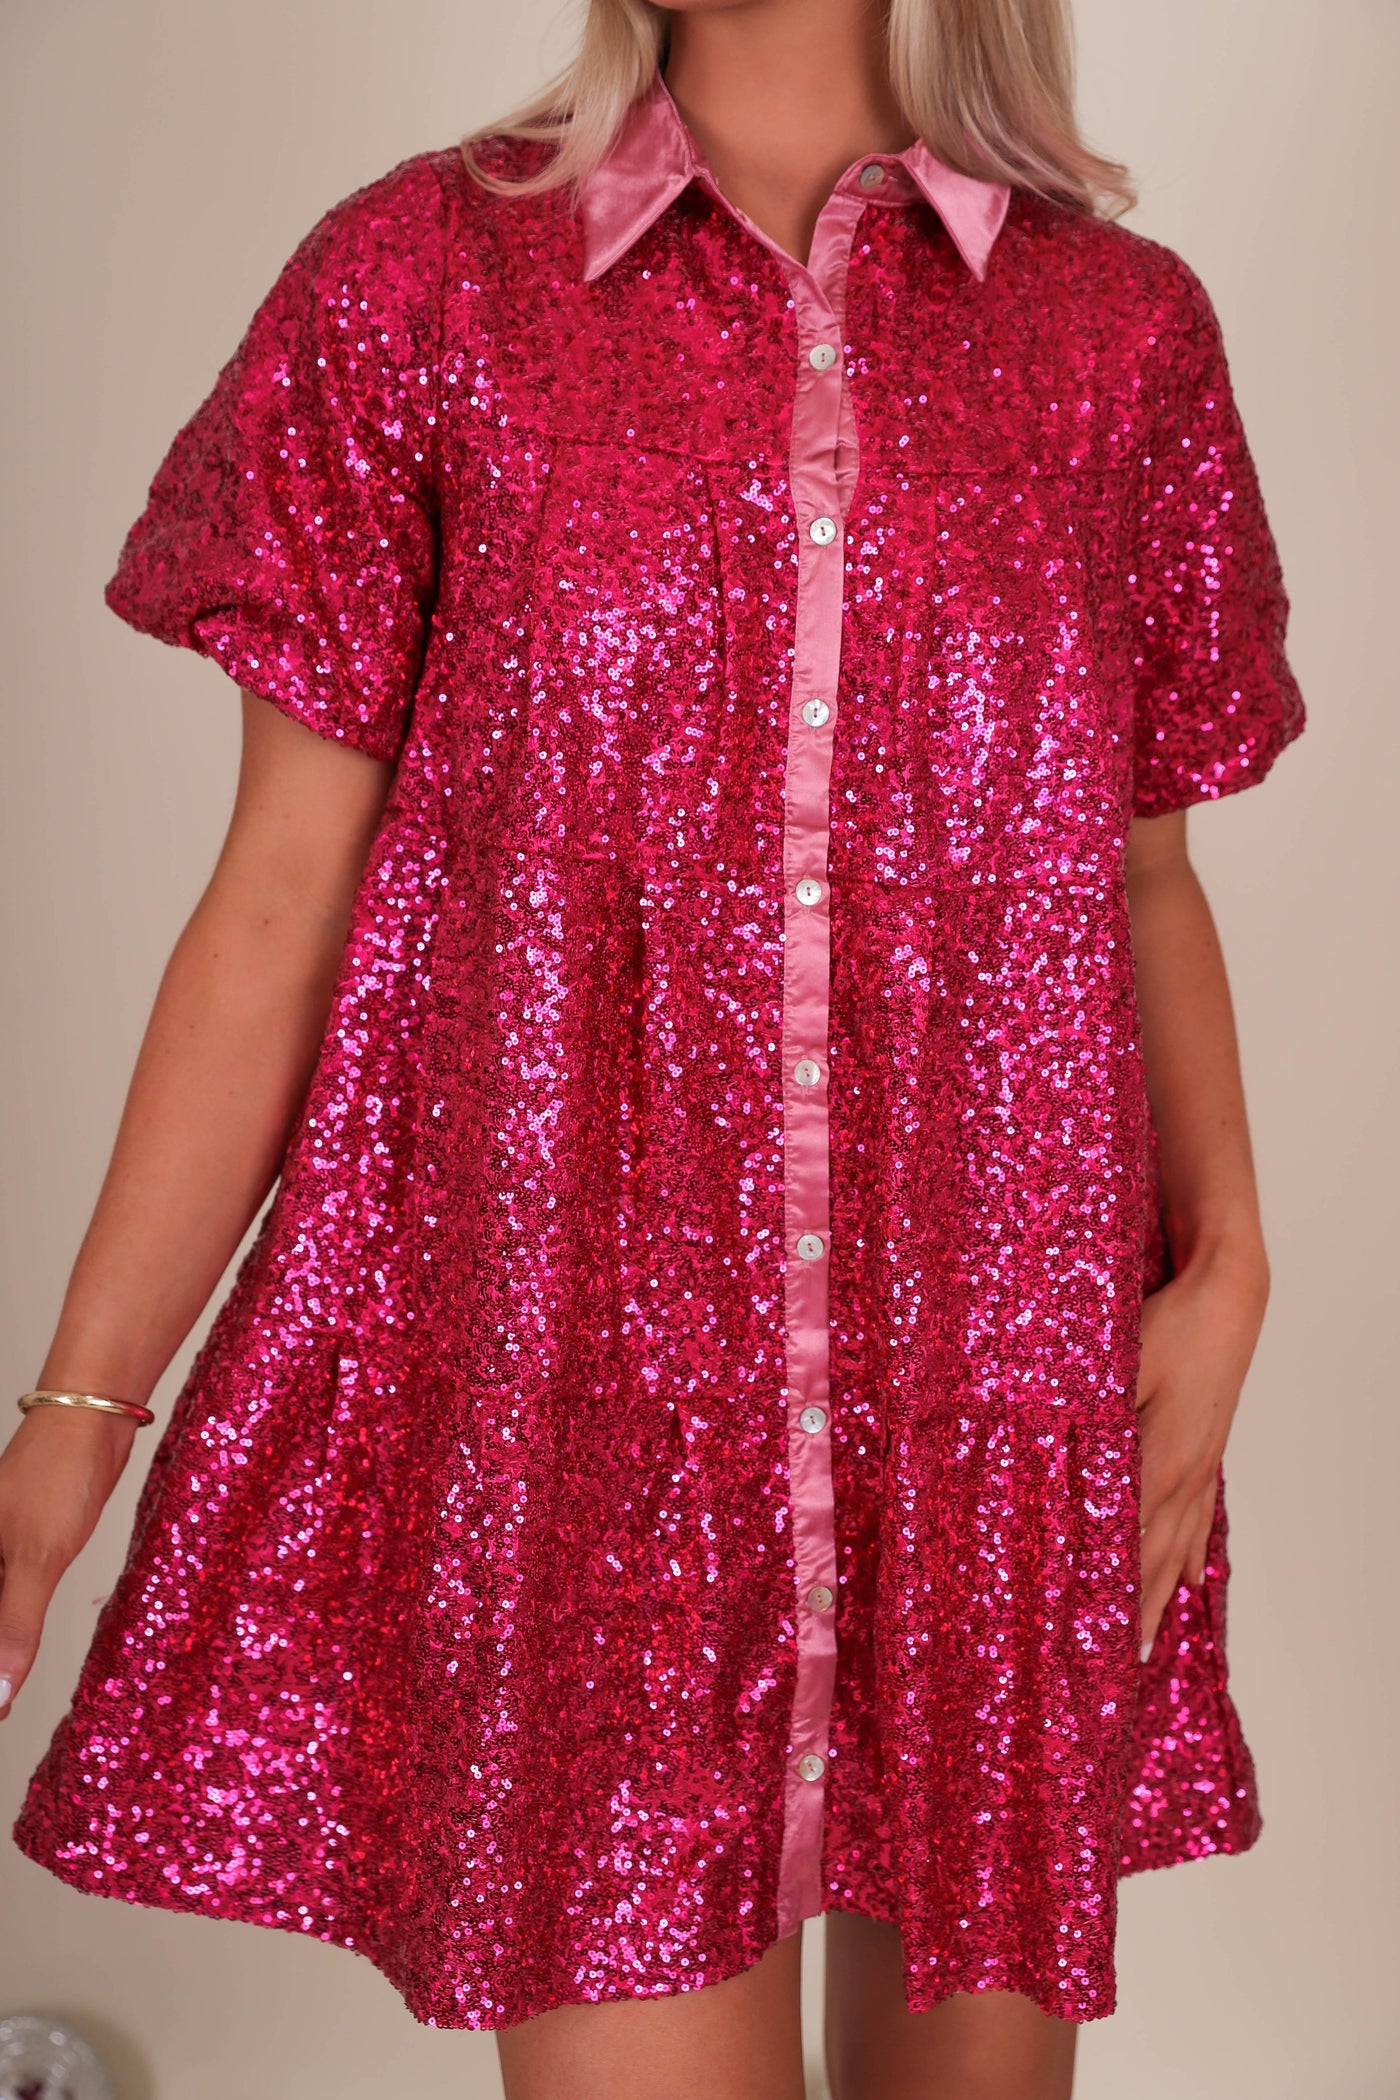 Sparkles Sequin Pink Dress- Queen of Sequins Hot Pink Dress- All Sequin Pink Dress